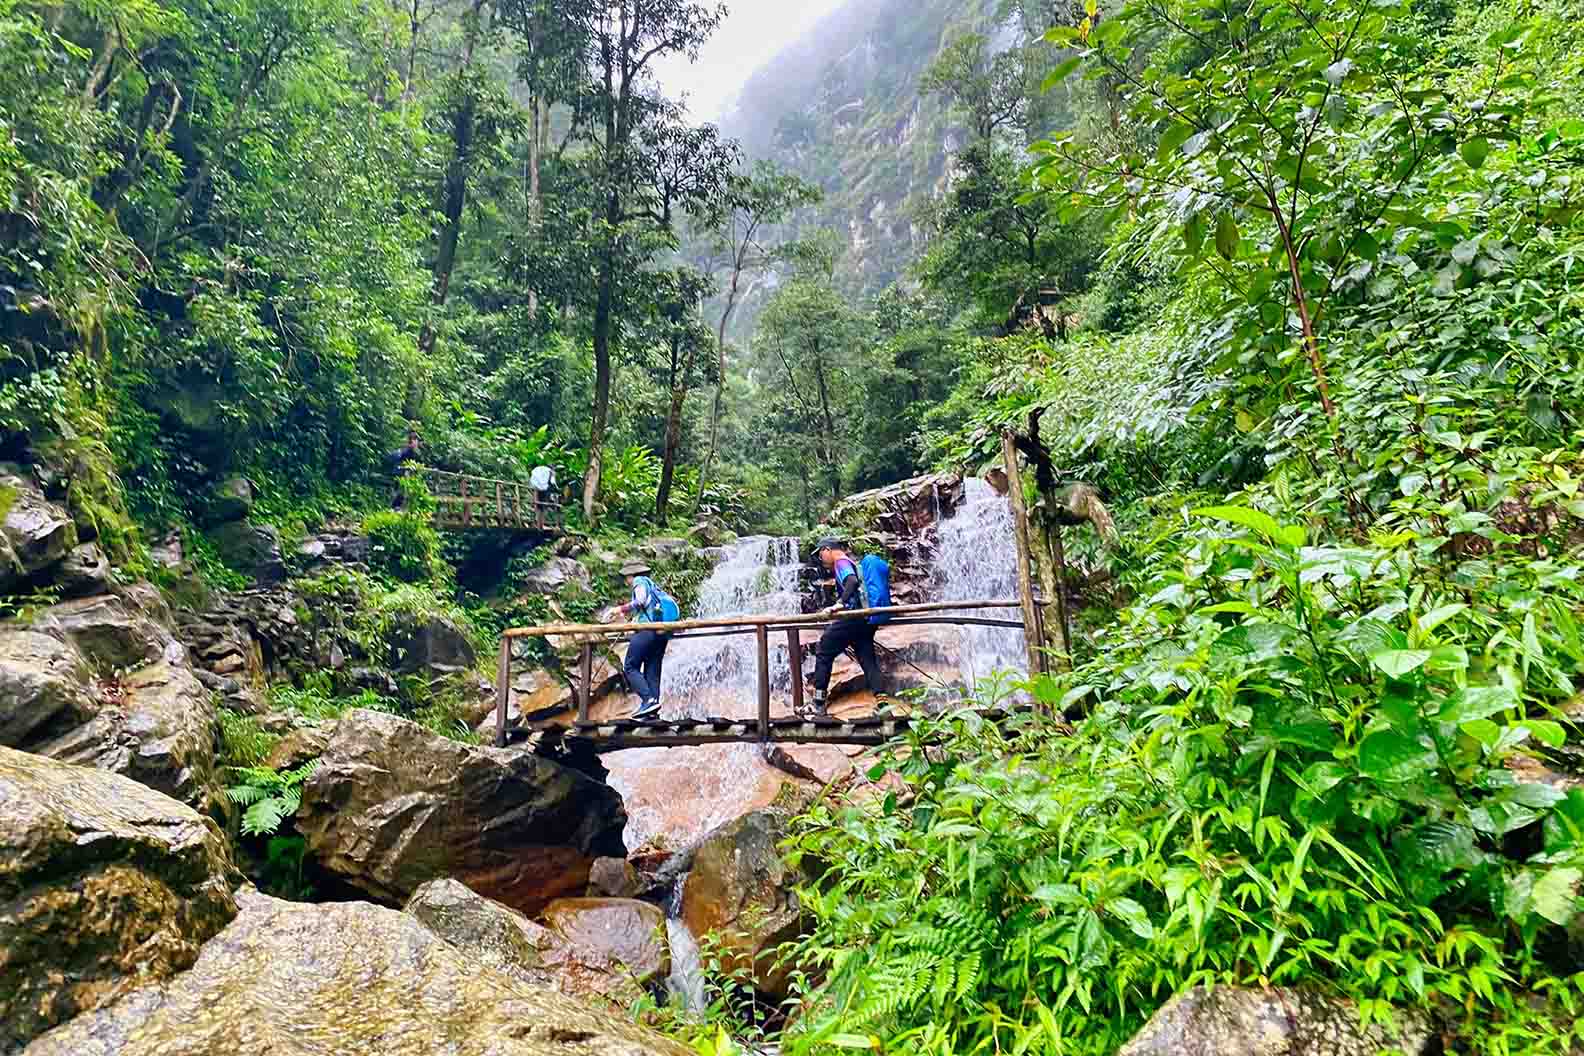 Băng rừng 2 ngày ngắm ‘quỷ núi’, săn hốc đá hình ‘trái tim’ Nhìu Cồ San-một ngọn núi cao ở Lào Cai - Ảnh 4.